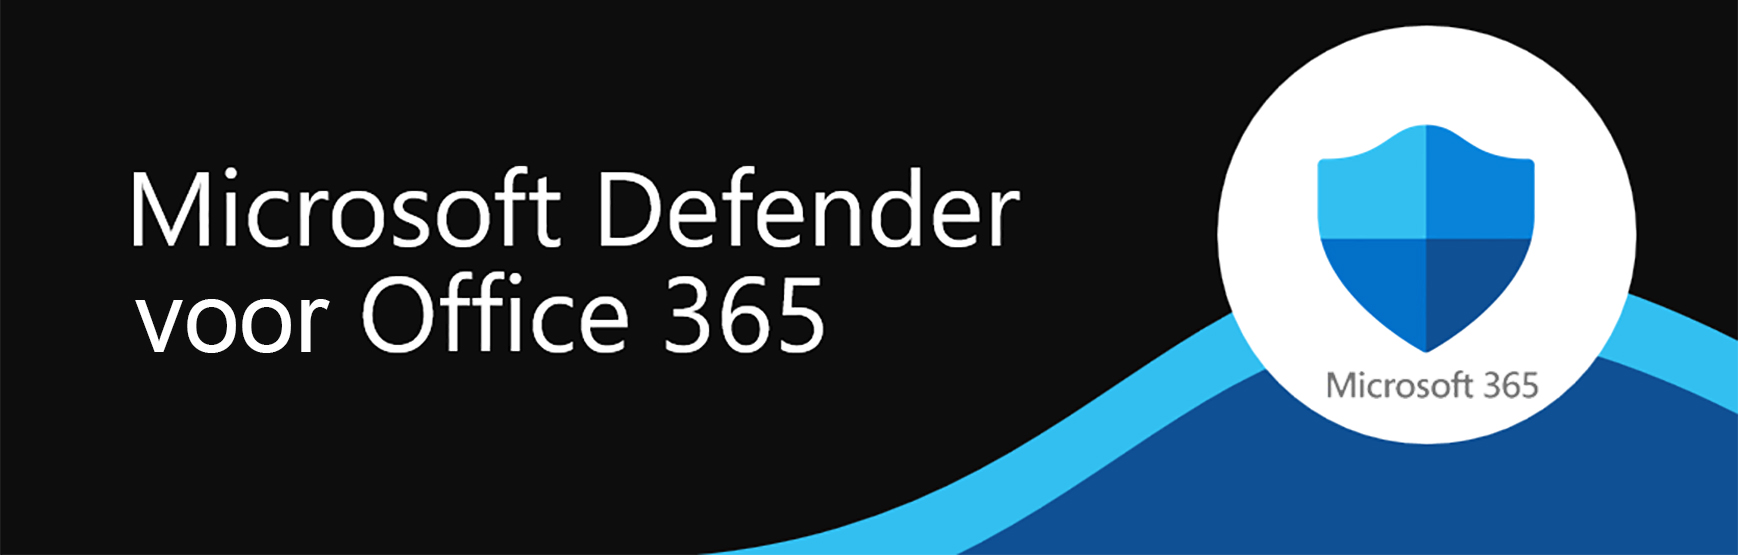 Microsoft DefenderMicrosoft Defender organisaties te beschermen tegen cyberbedreigingen in de Office 365-omgeving beveiligingsoplossing MS365